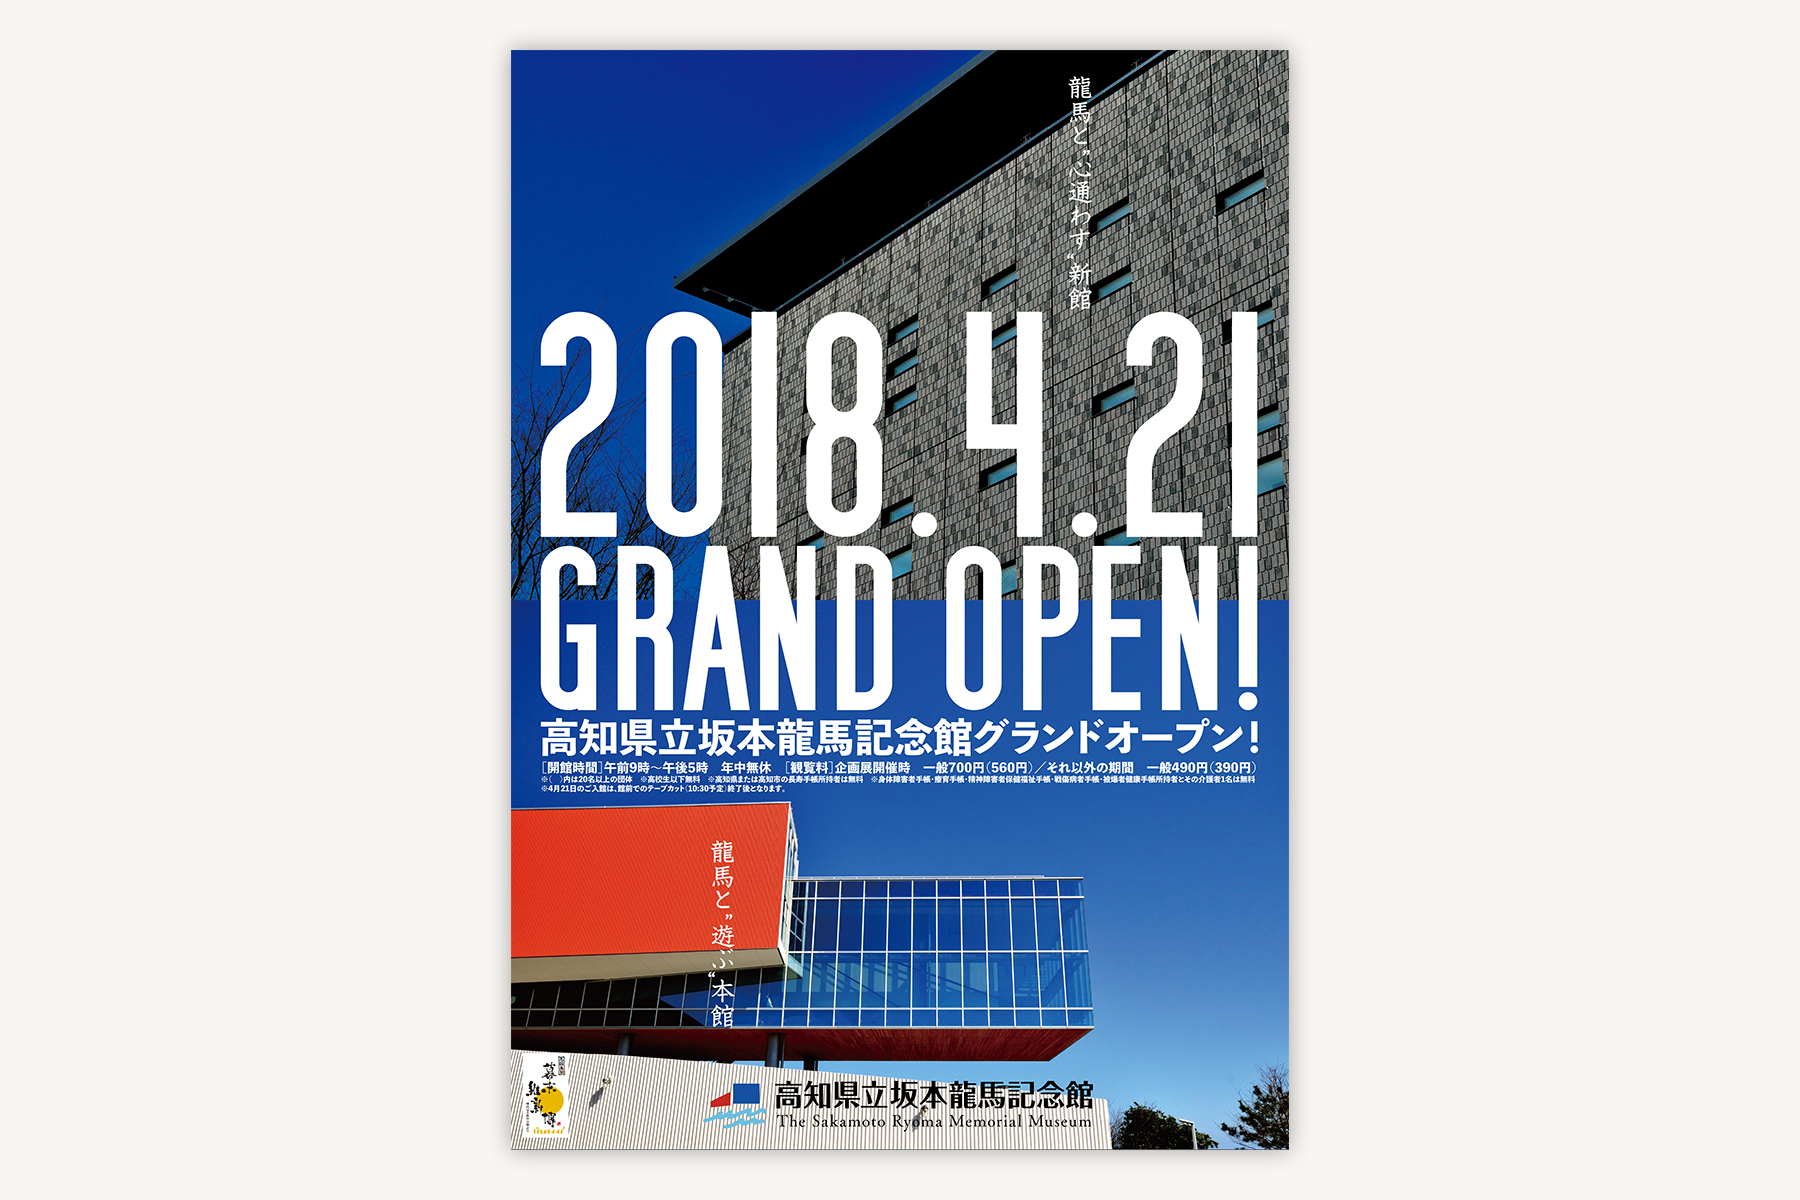 高知県立坂本龍馬記念館 GRAND OPEN!